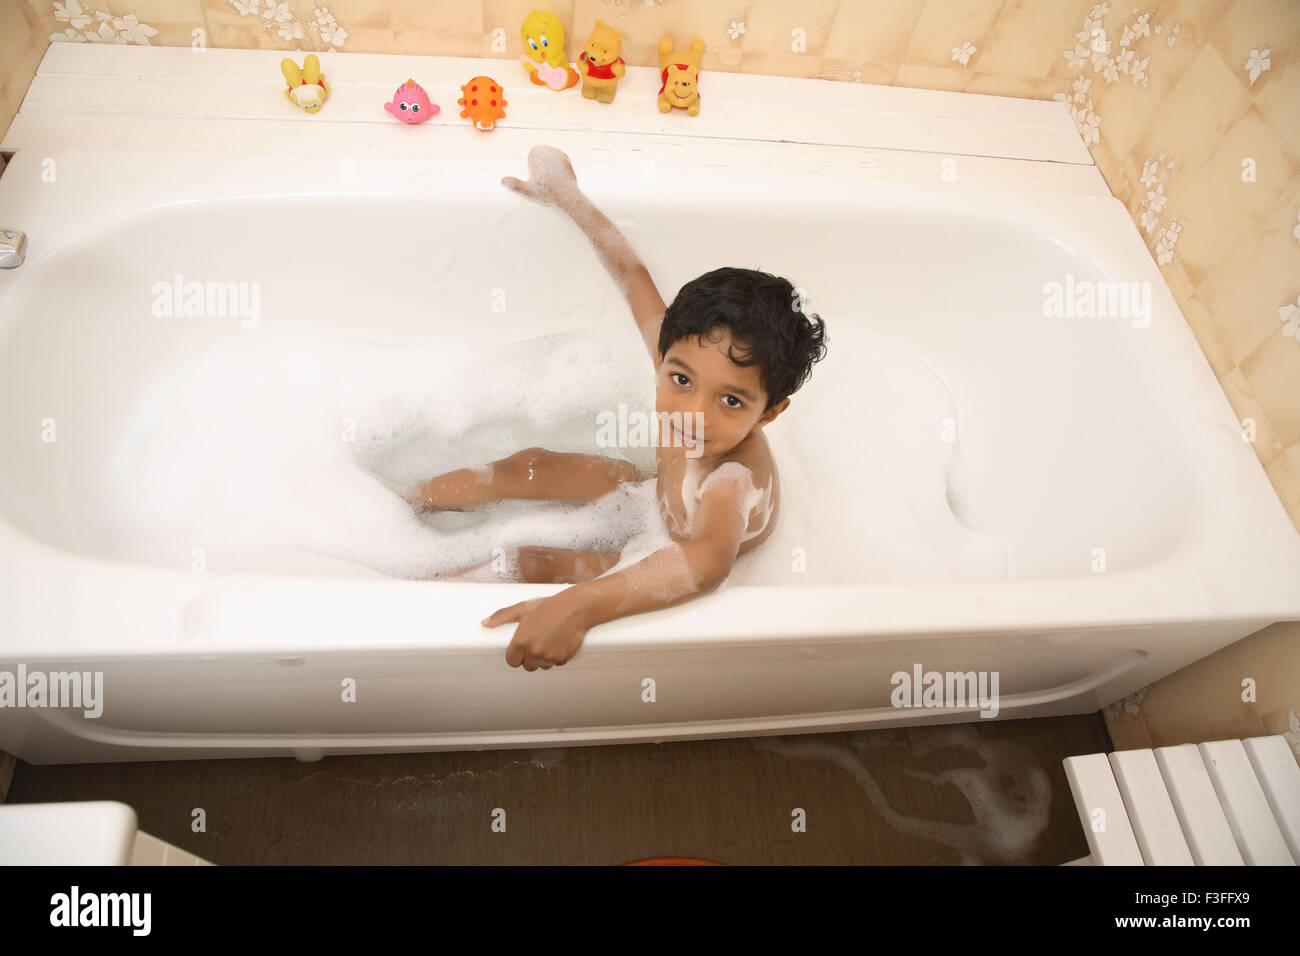 Ragazzo tenendo bagno in vasca bagno schiuma giocattoli a fianco signor#468 Foto Stock